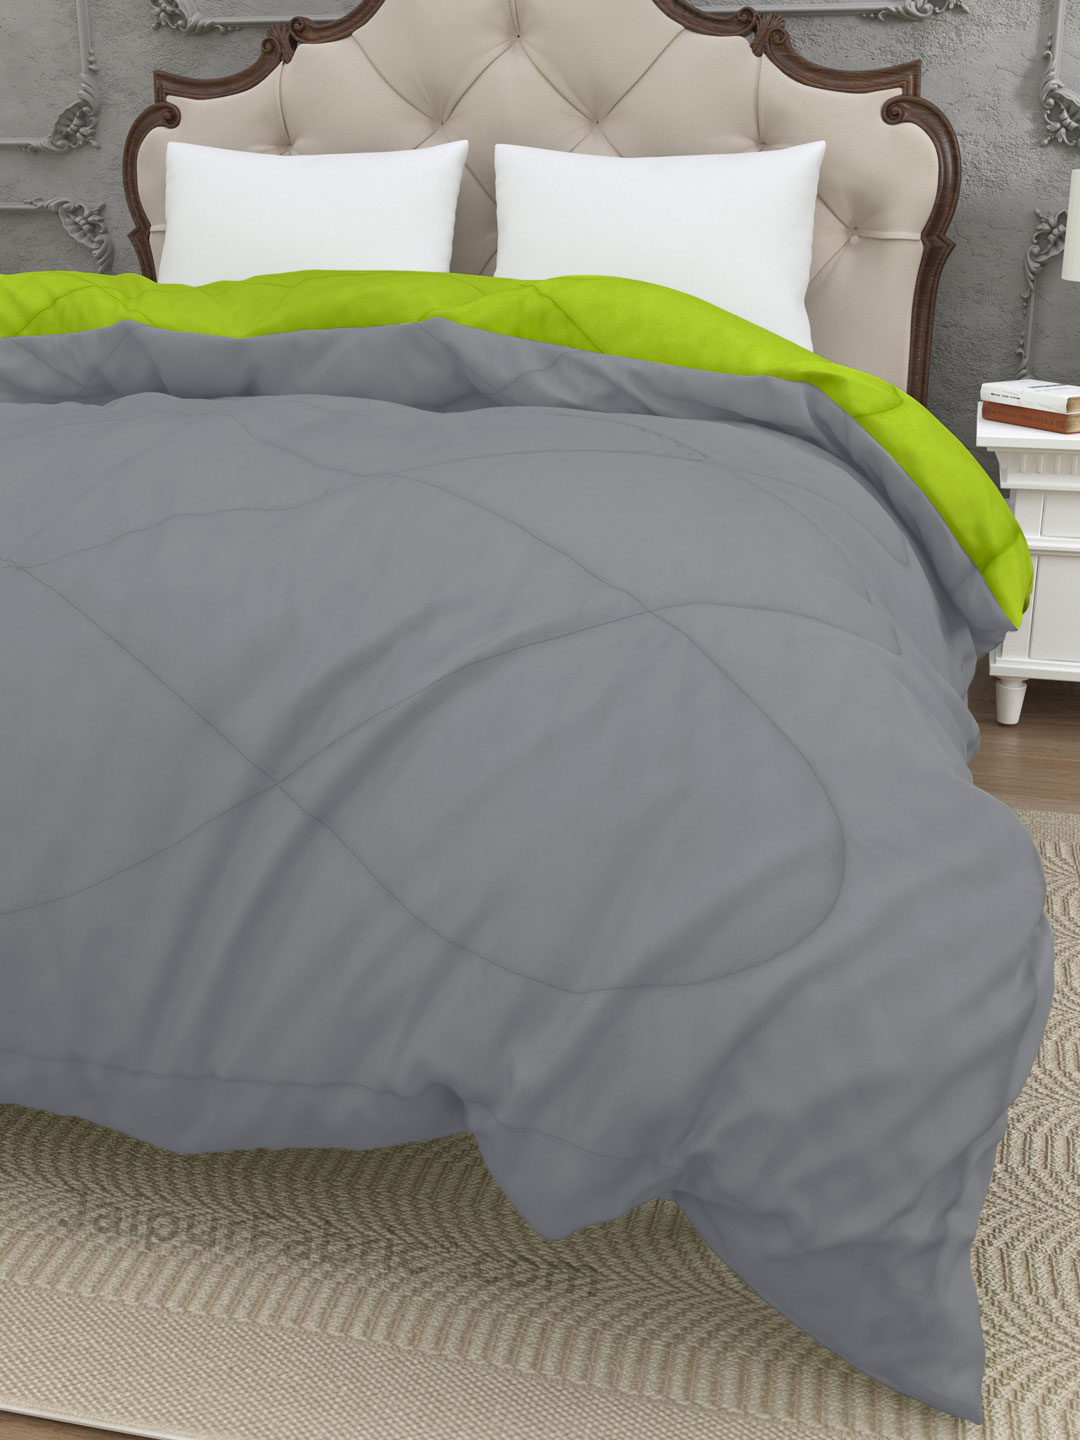 Dark Grey - Lemon Green Double Bed Comforter